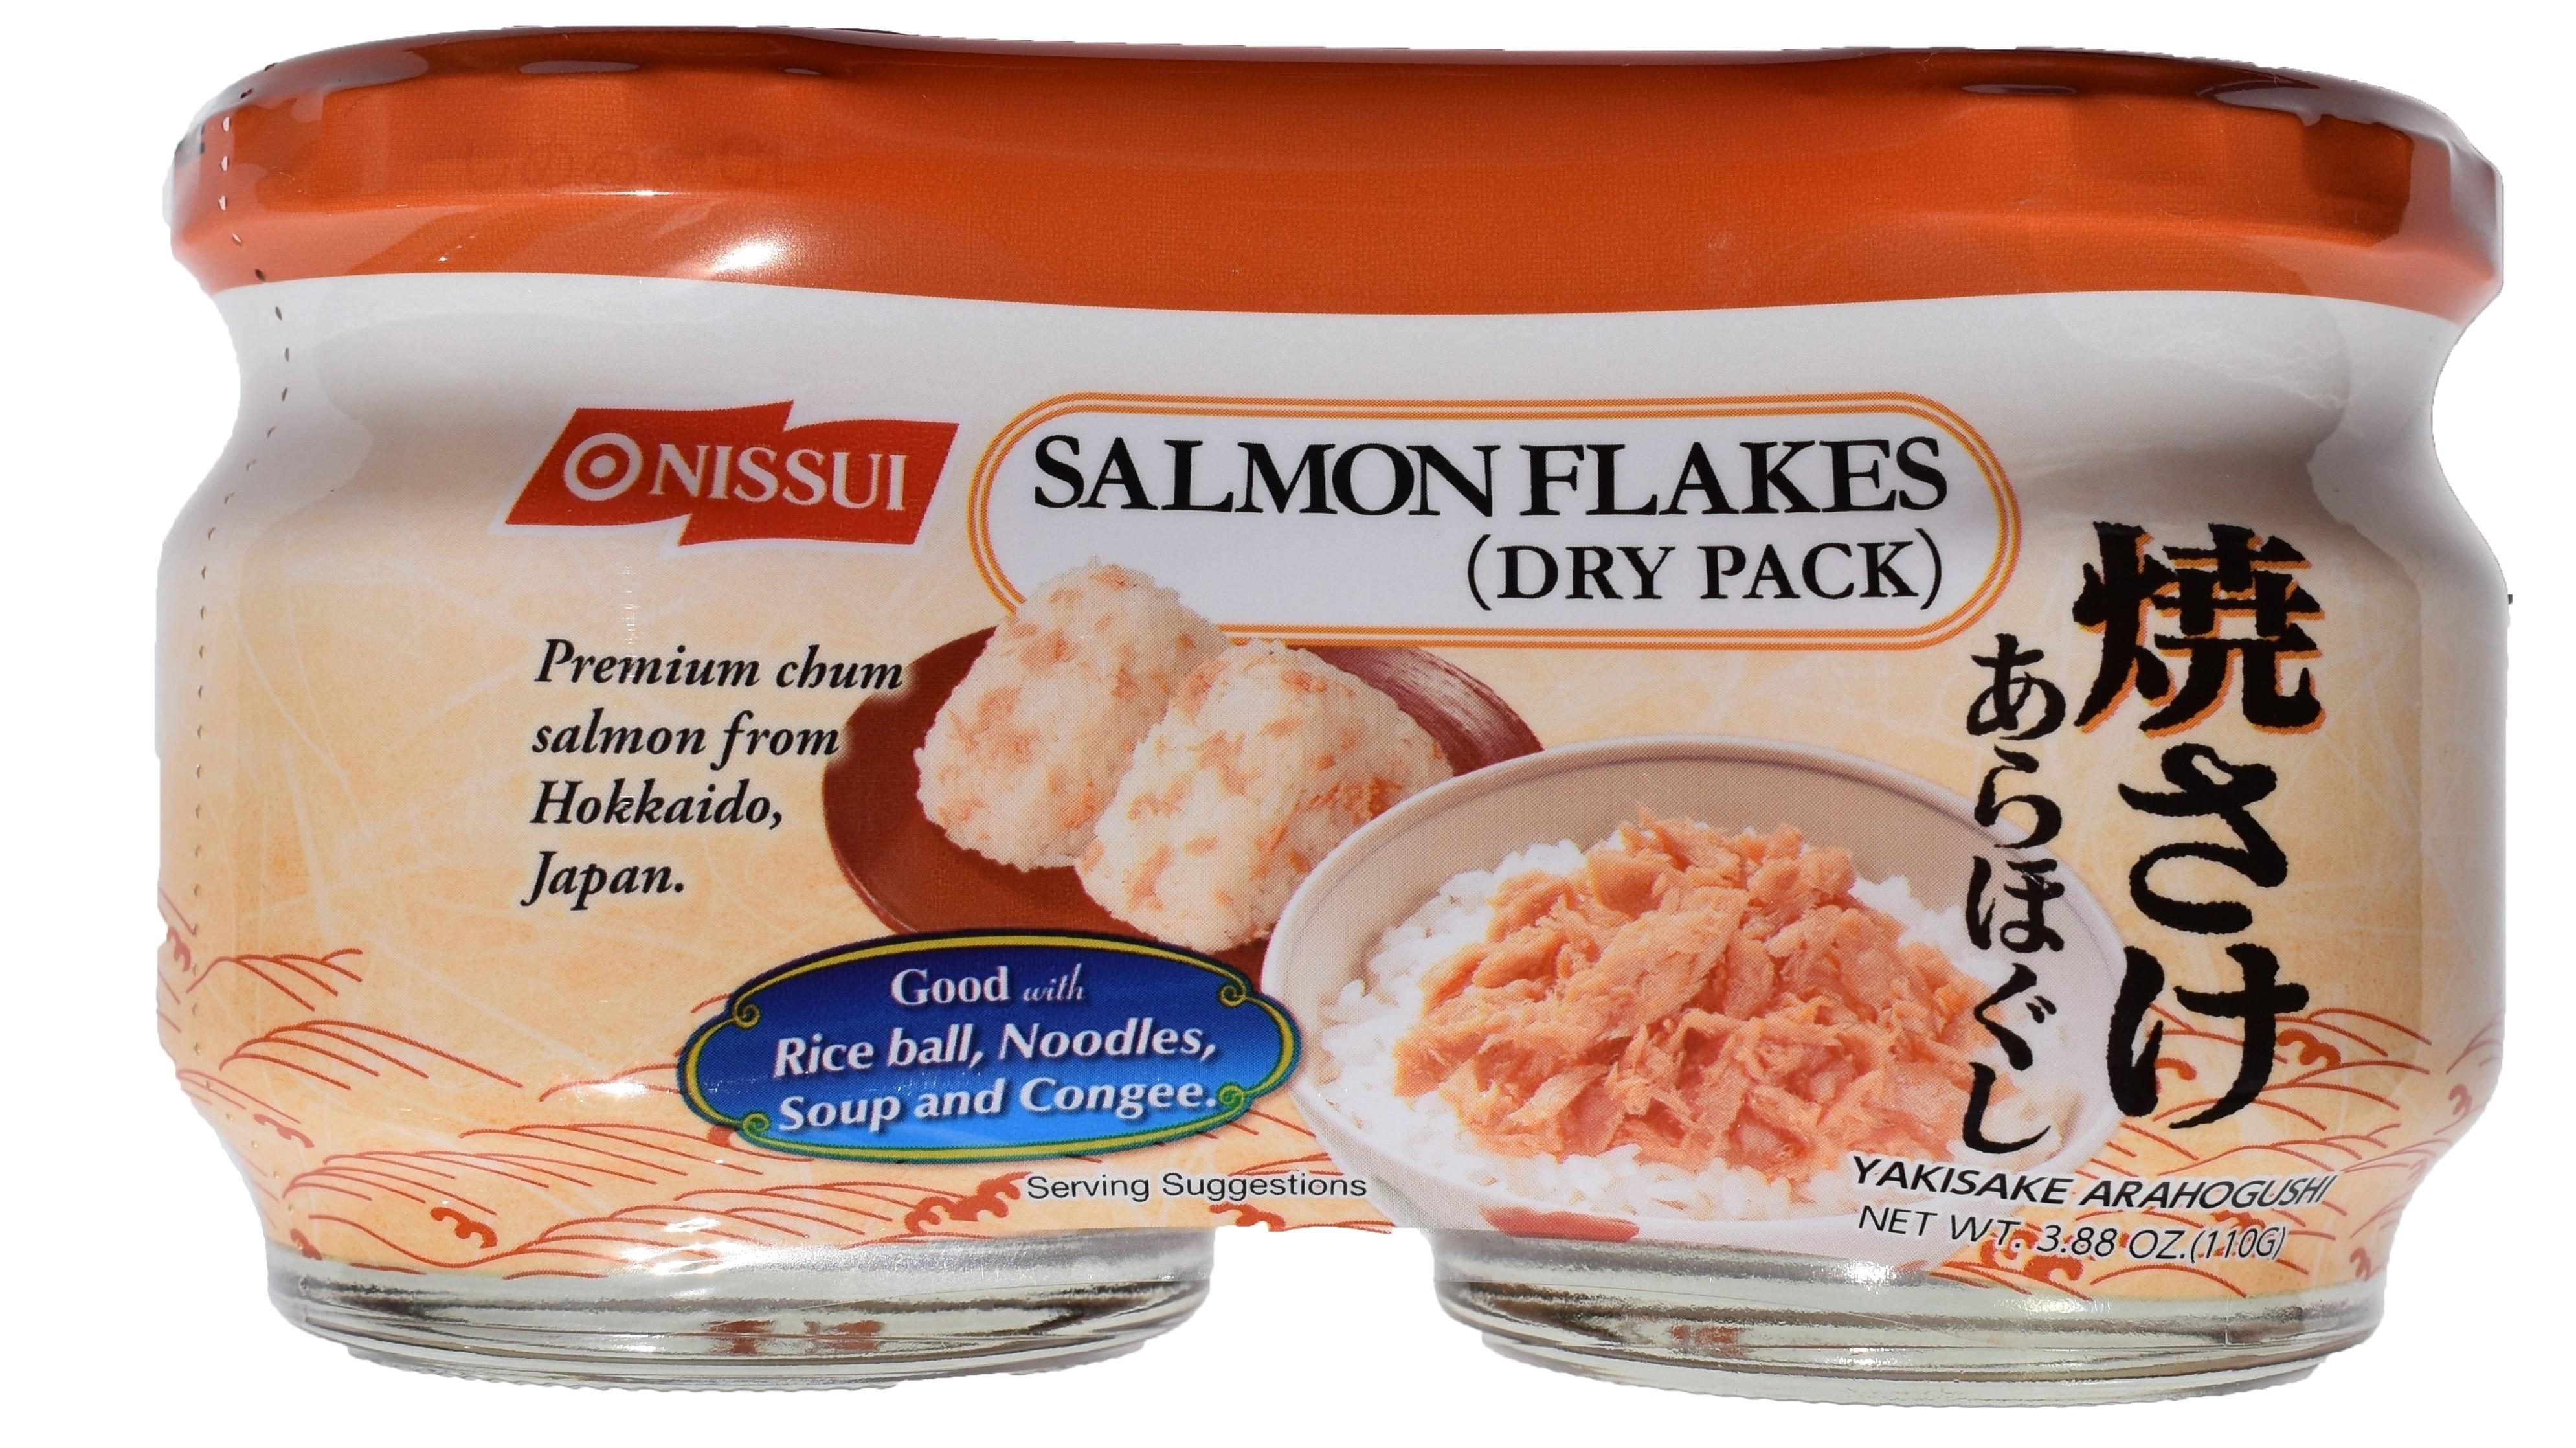 Nissui Salmon Flake (2 Pack) - 110g/3.88oz